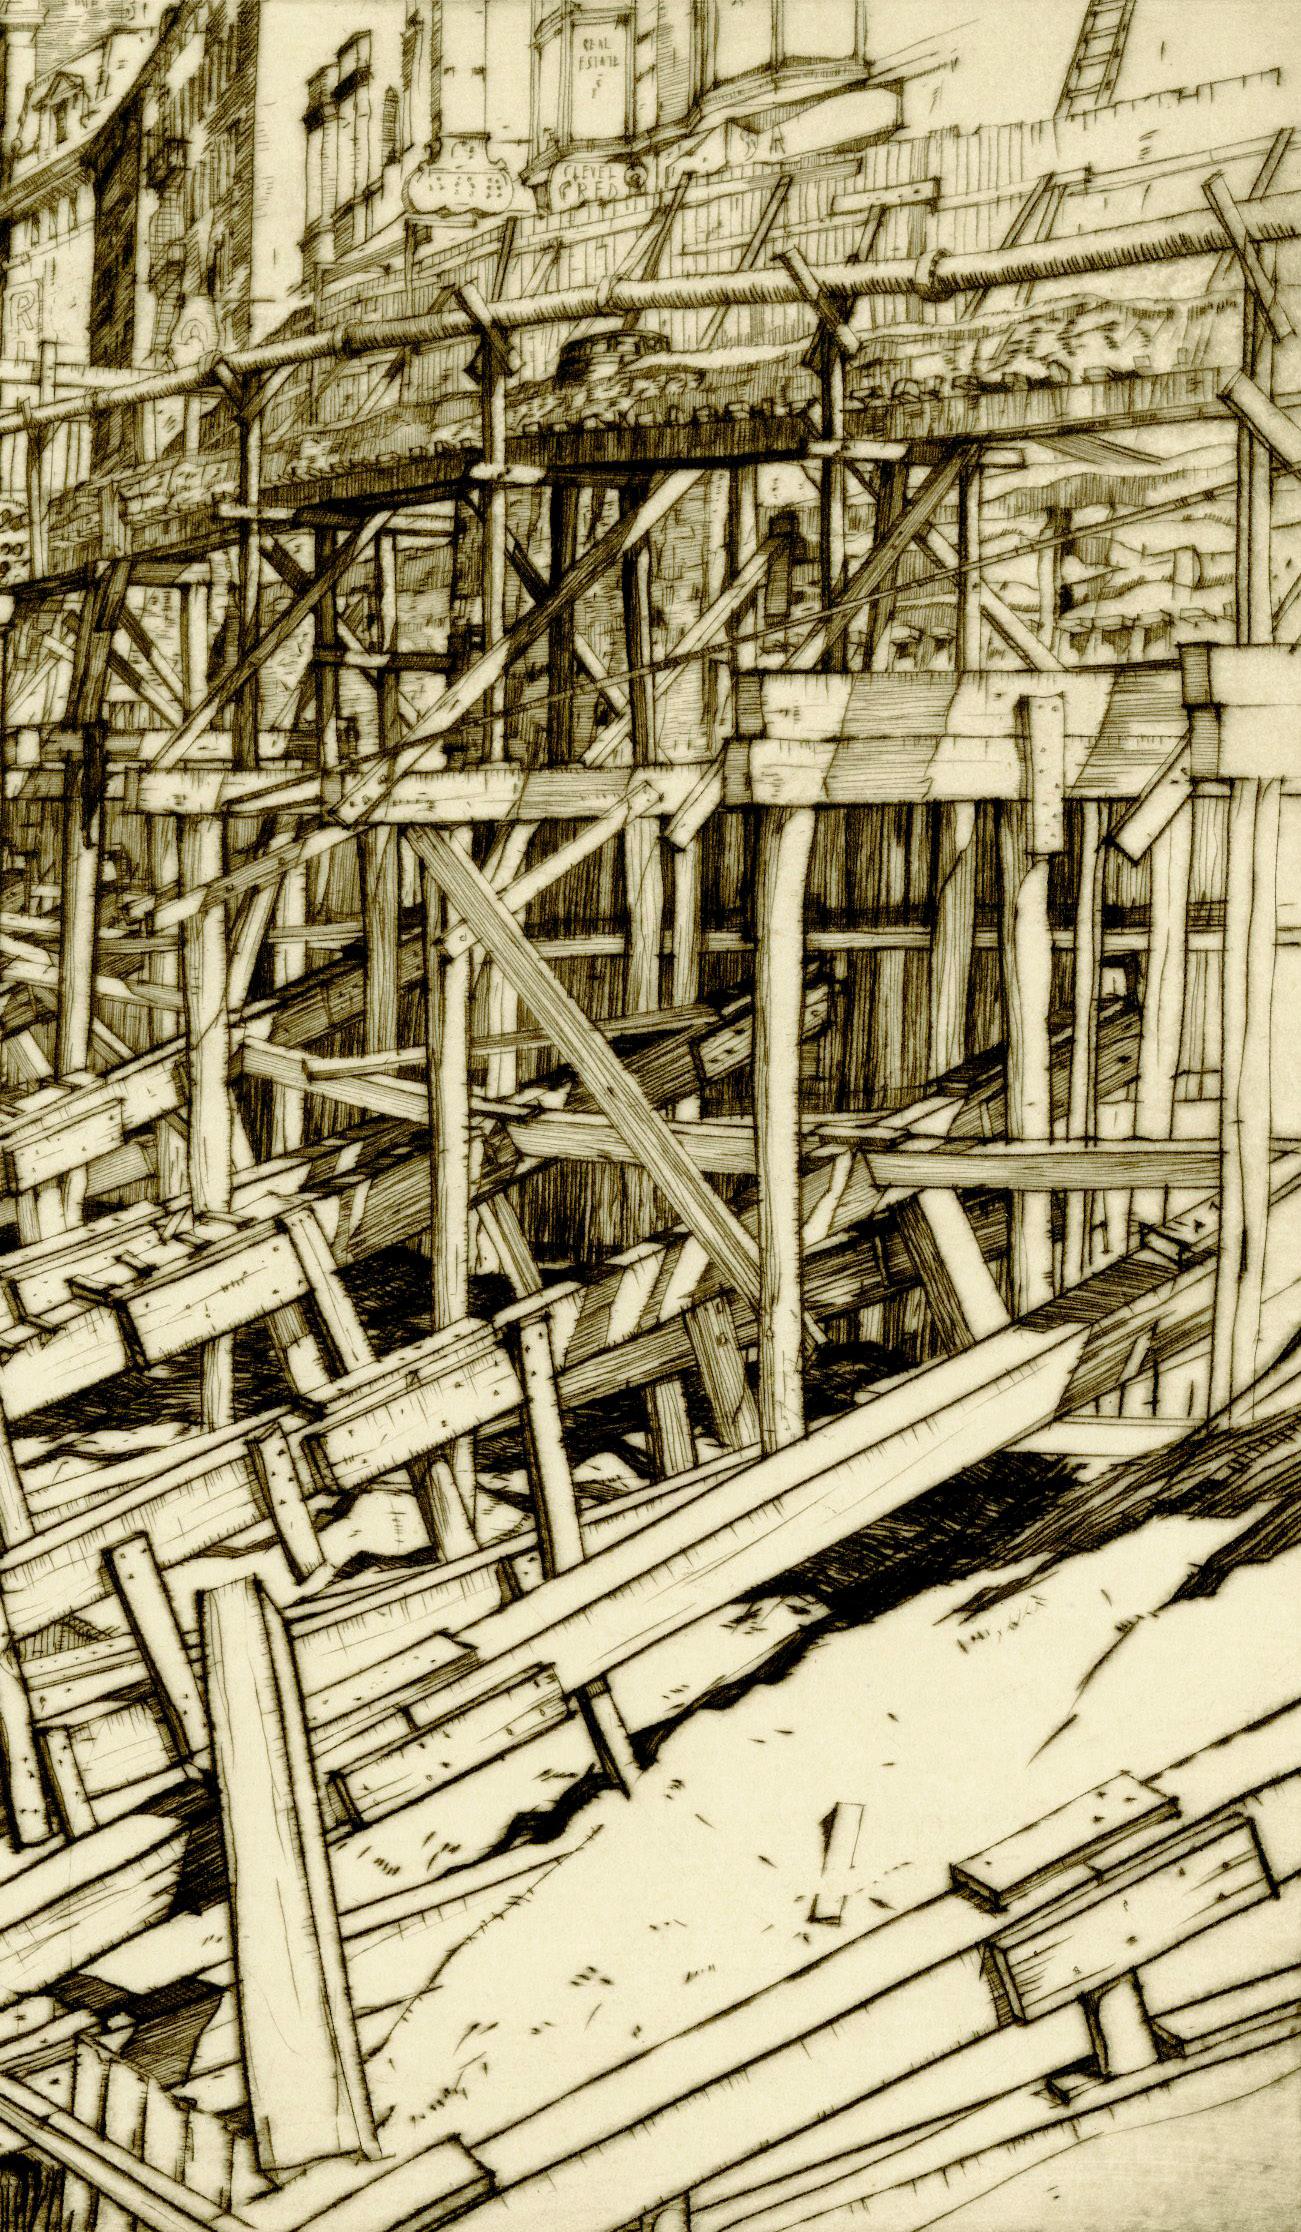 Ontario St. Nivellement et rampes temporaires
Pointe sèche, août 1929
Signé au crayon en bas à droite (voir photo)
D'après : L'ensemble Cleveland (23 planches), celui-ci étant le n°.  13
Édition : Petite
Un brillant exemple de l'art industriel